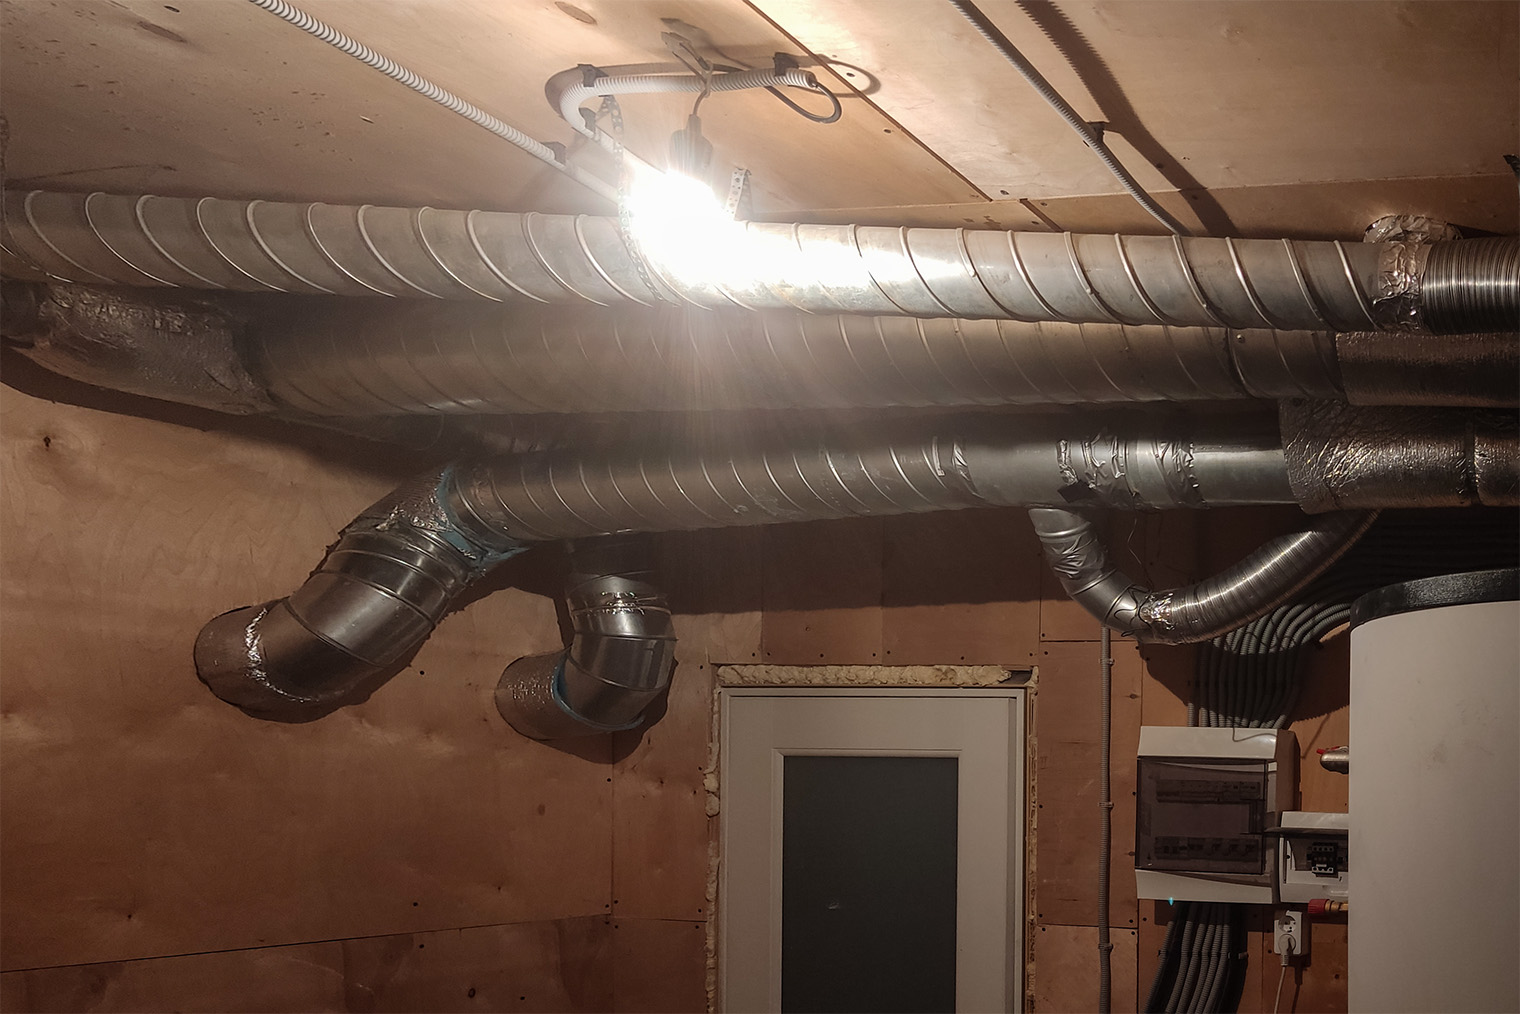 Так выглядит разводка вентиляции под потолком котельной. Сами вентиляторы, рекуператор, шумоглушители, воздушный фильтр — в пристройке, которая расположена через стену позади дома